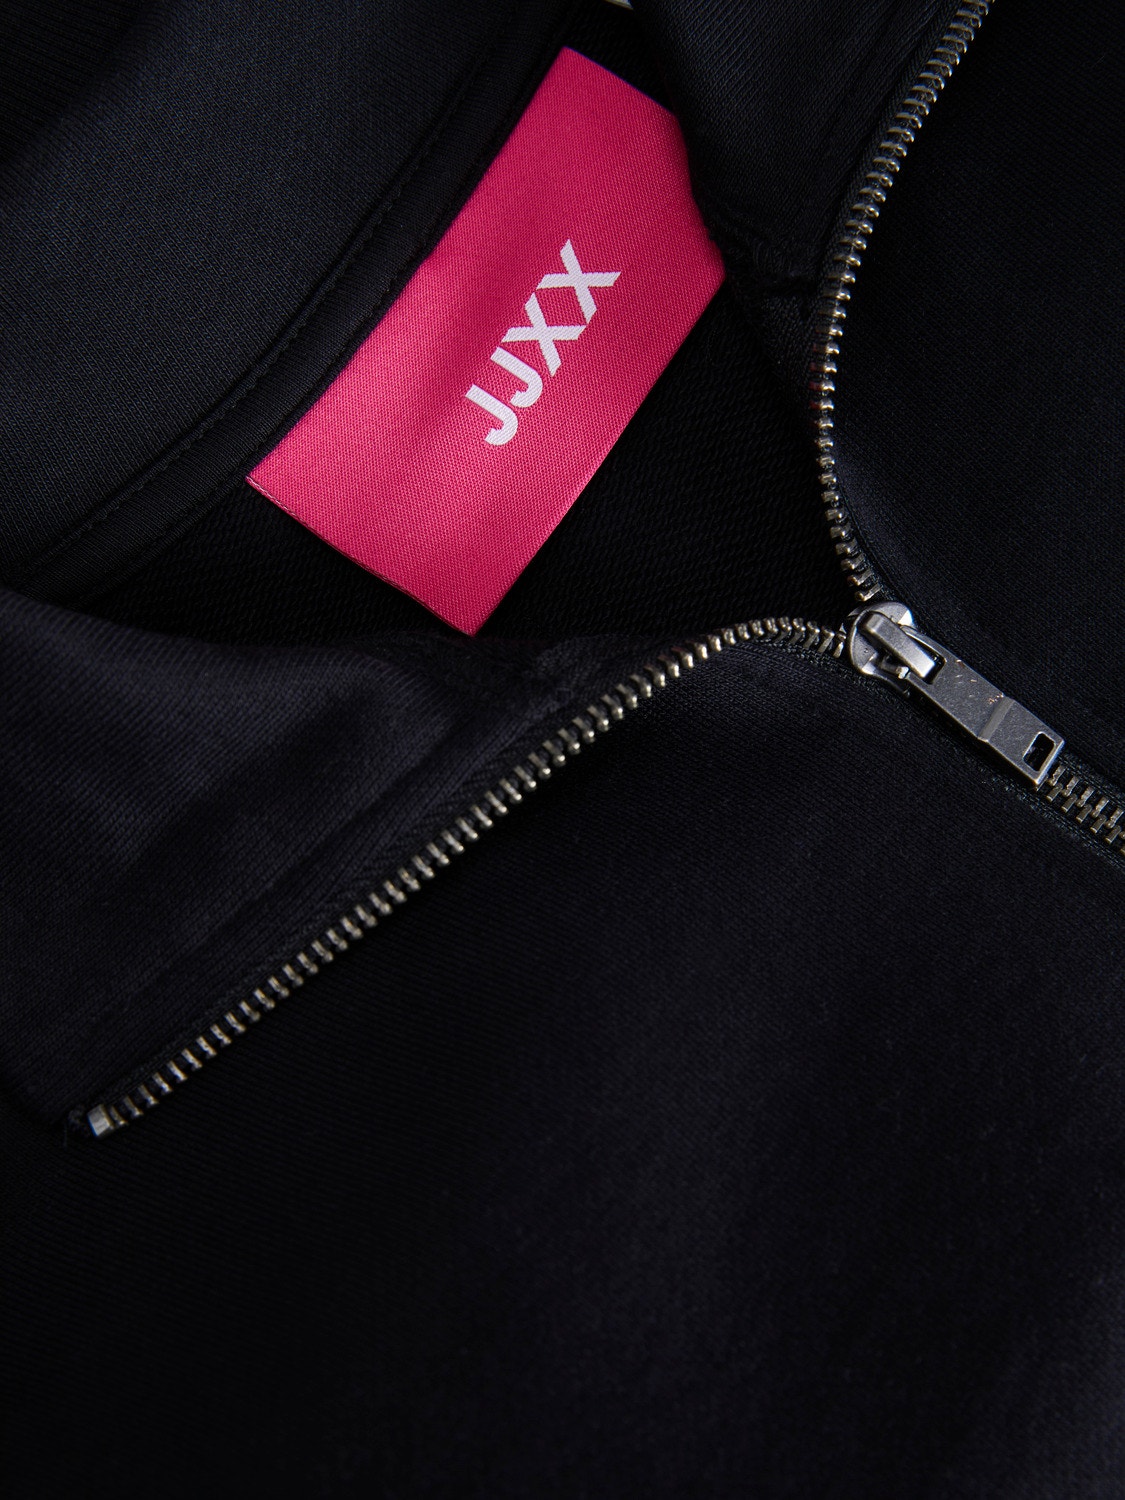 JJXX JXSOFIA Sweatshirt med lynlås -Black - 12245777